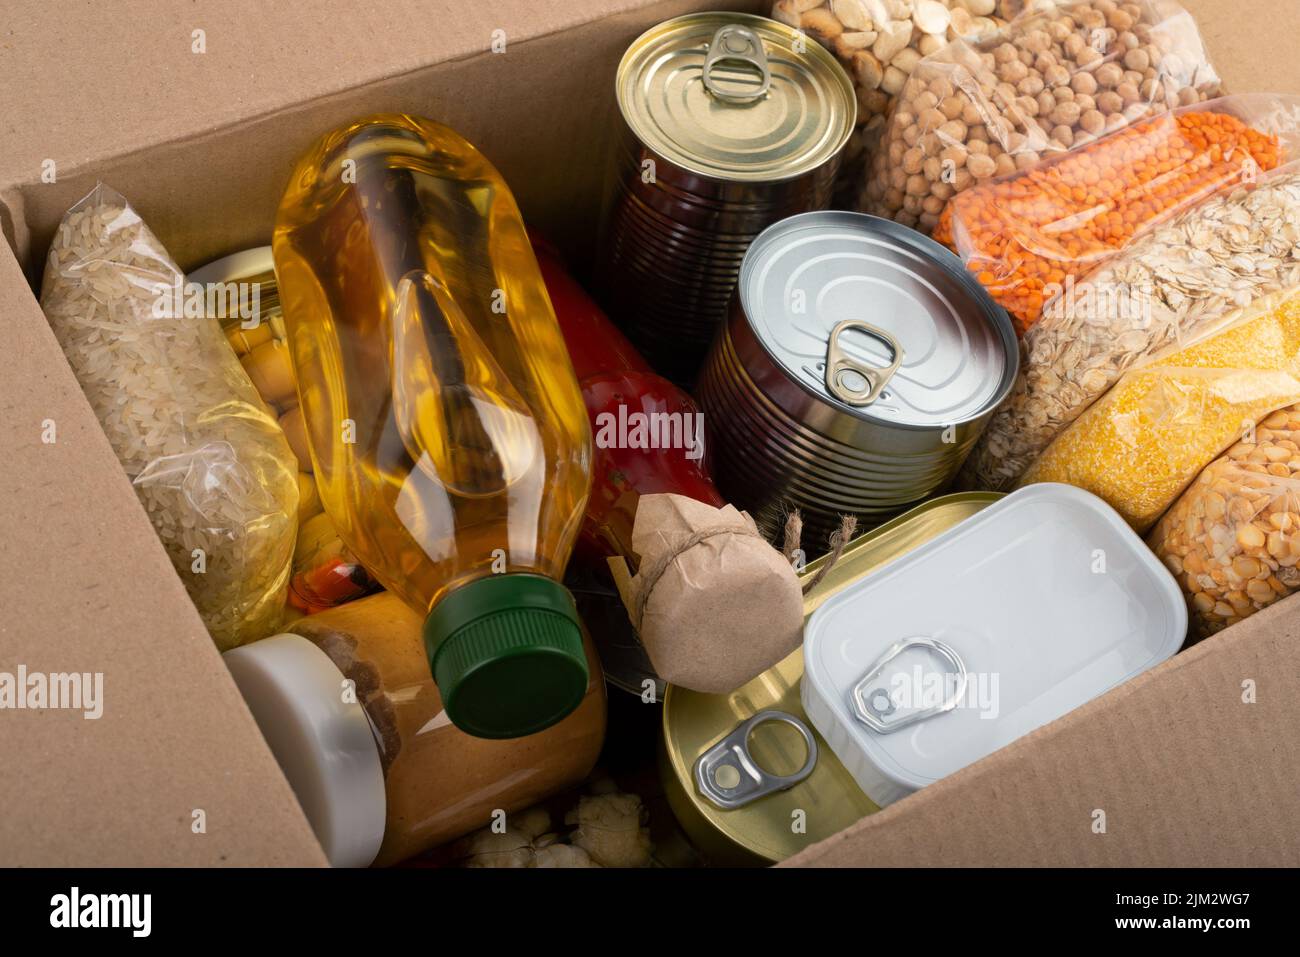 Survival set of nonperishable foods in carton box Stock Photo